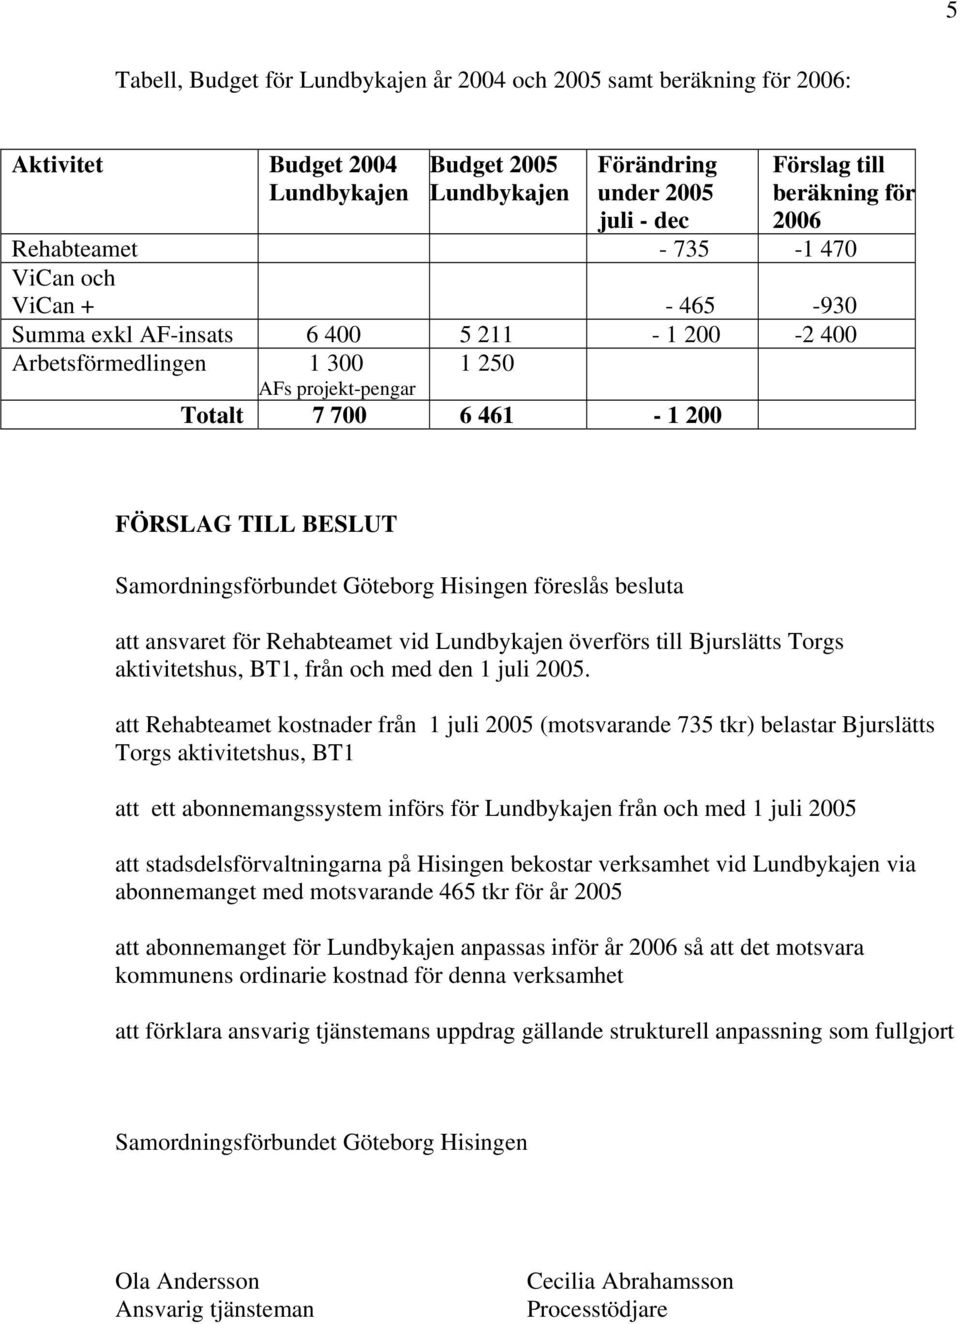 Samordningsförbundet Göteborg Hisingen föreslås besluta att ansvaret för Rehabteamet vid Lundbykajen överförs till Bjurslätts Torgs aktivitetshus, BT1, från och med den 1 juli 2005.